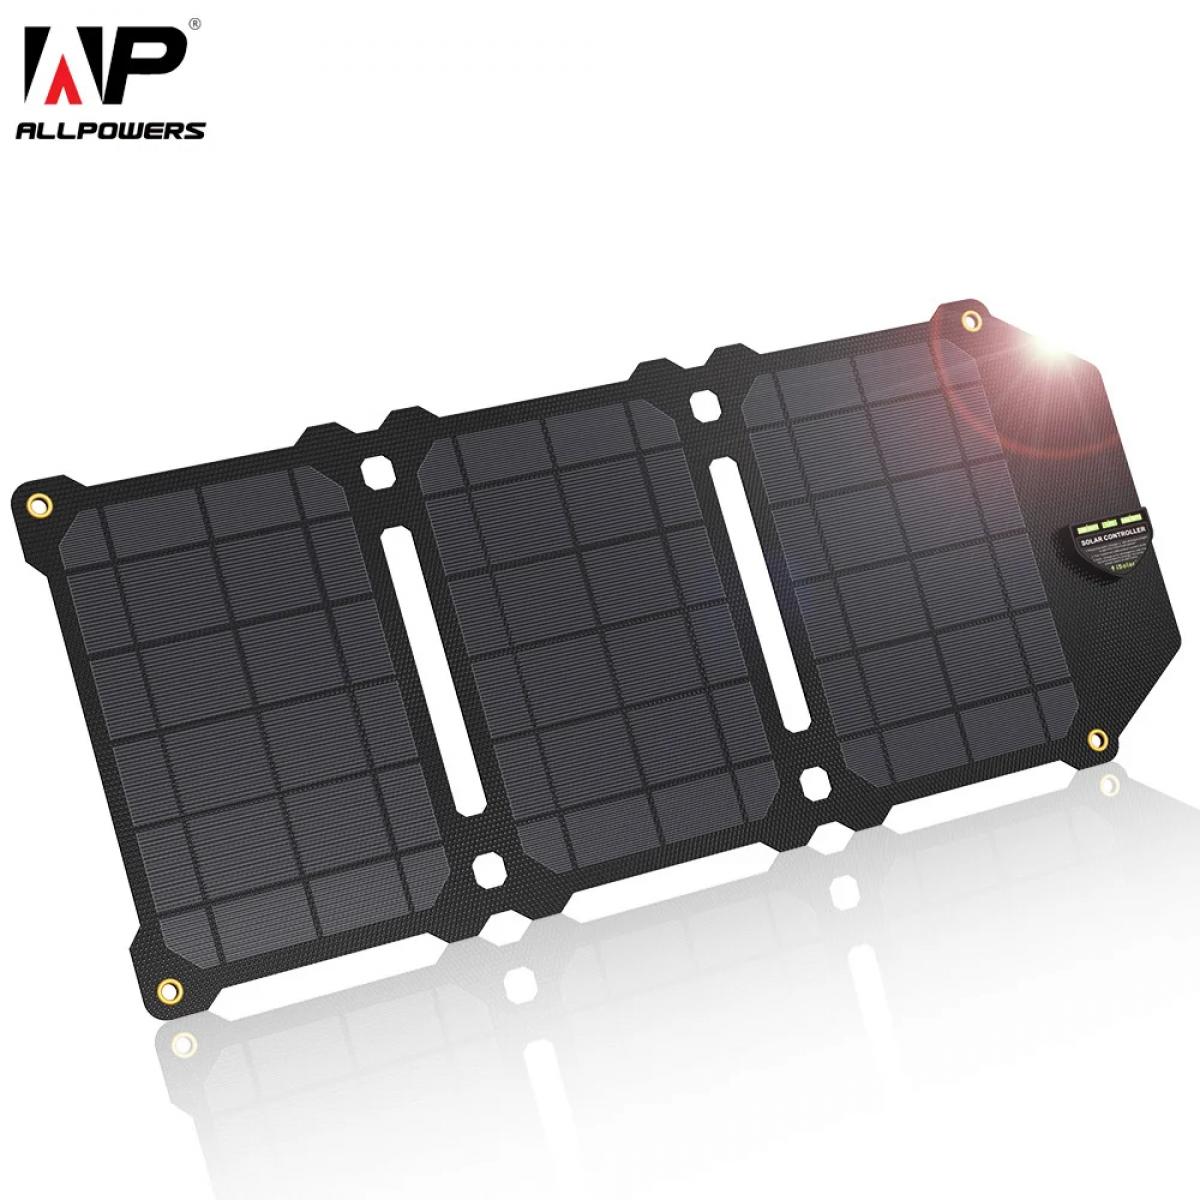 Acquista Dagu 10W 5V Caricatore per pannello solare in silicio  monocristallino Porta USB per cellulare da campeggio